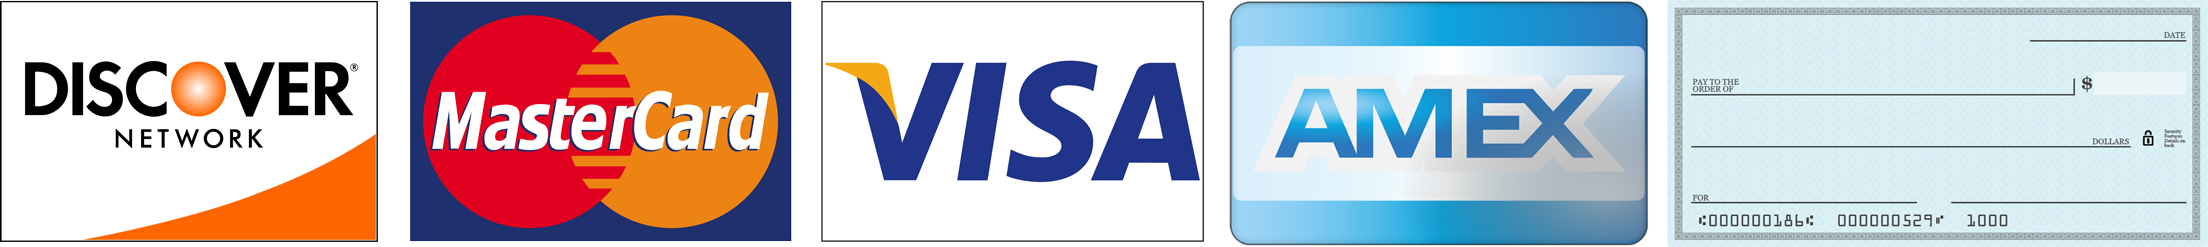 Discover, Mastercard, Visa, Amex Card and Check Logo